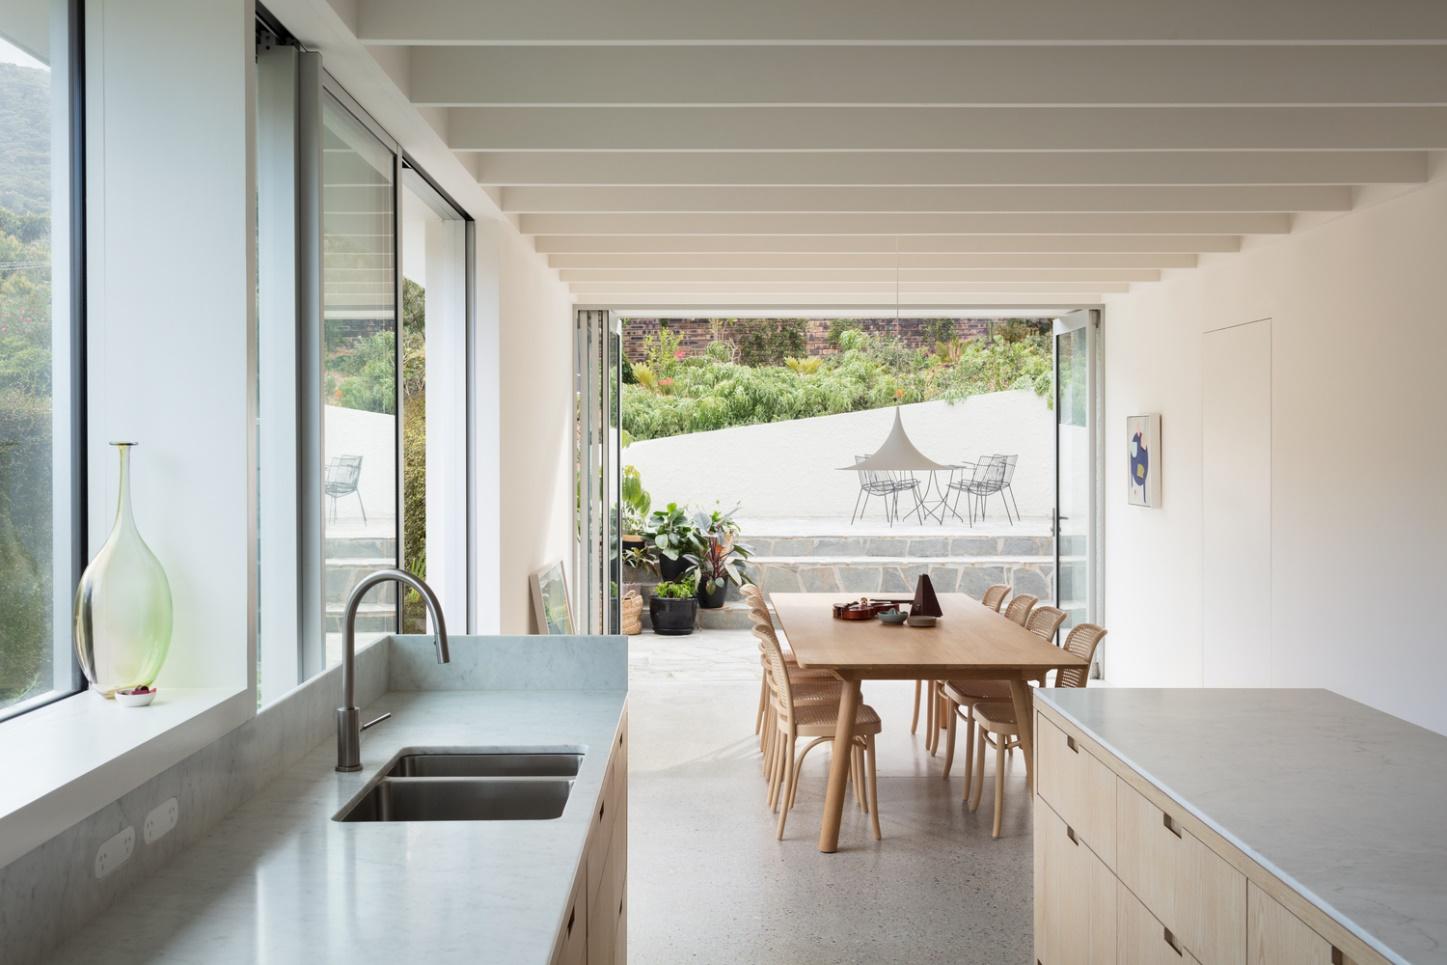 Petite maison dans un style minimaliste blanc avec des fenêtres panoramiques